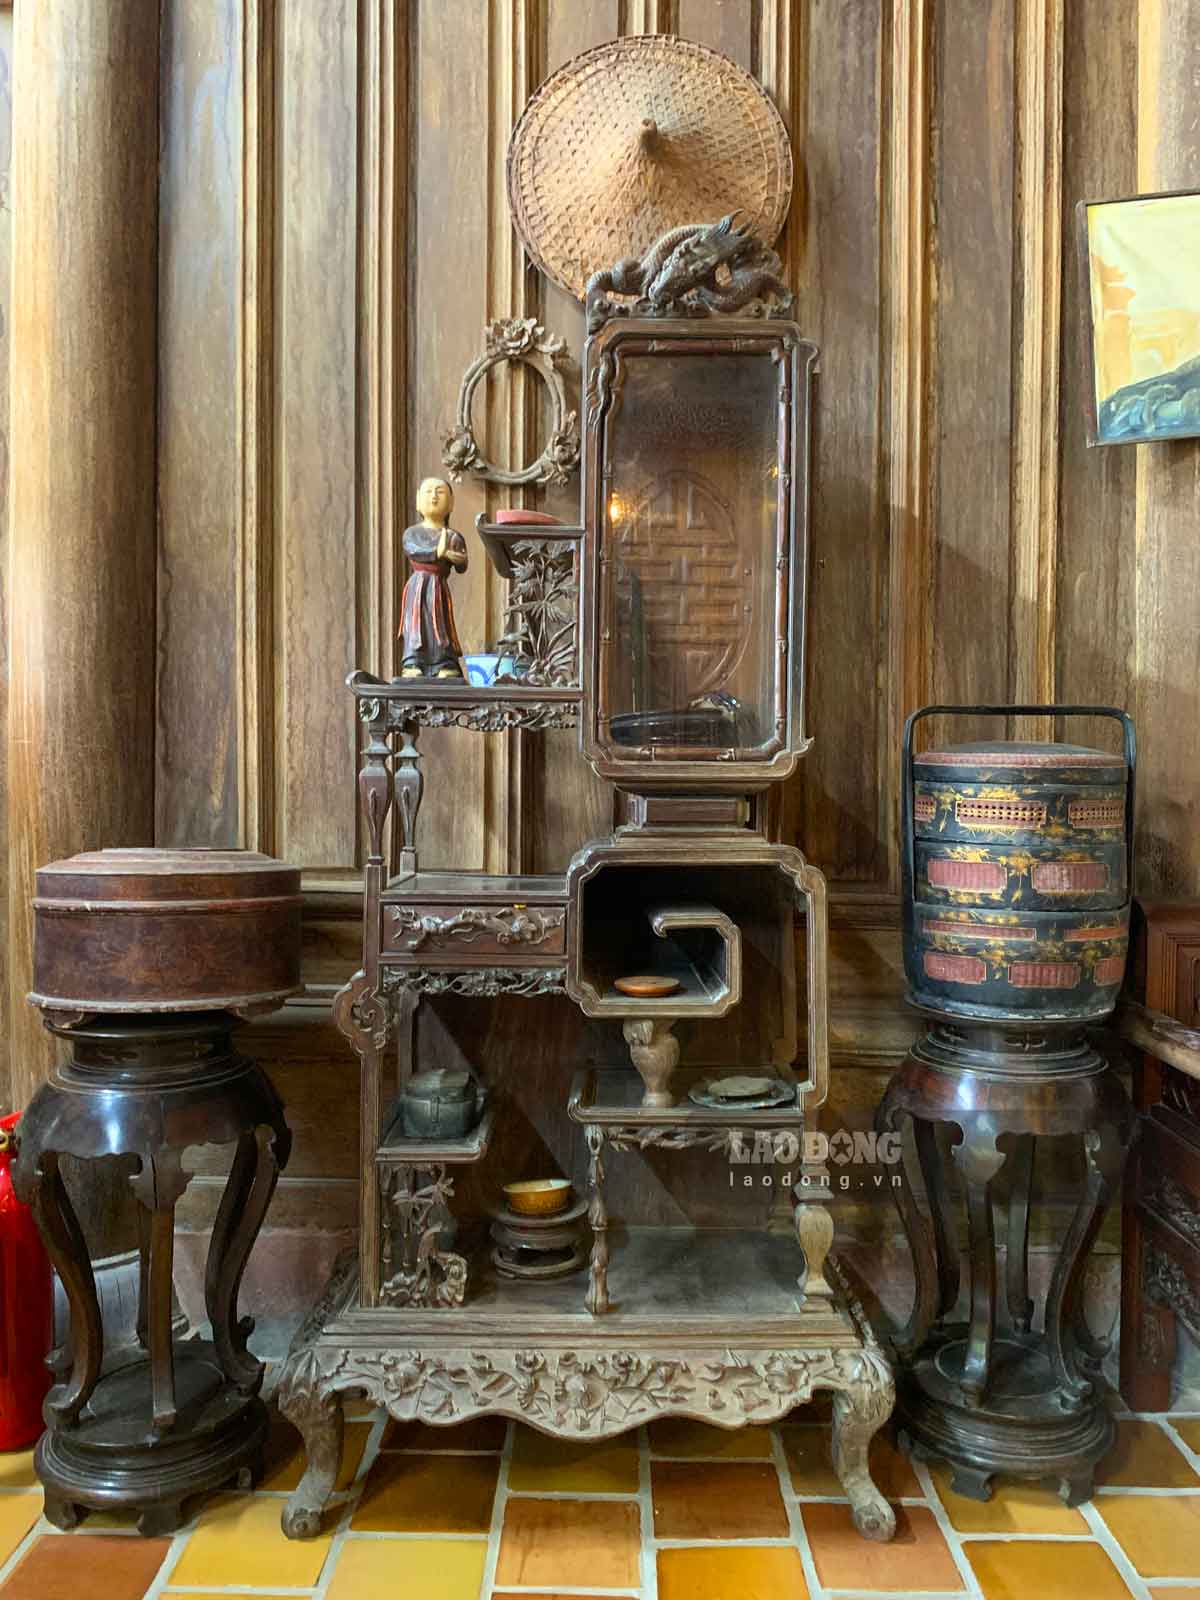 房子里的家具也是有数百年历史的木制品。